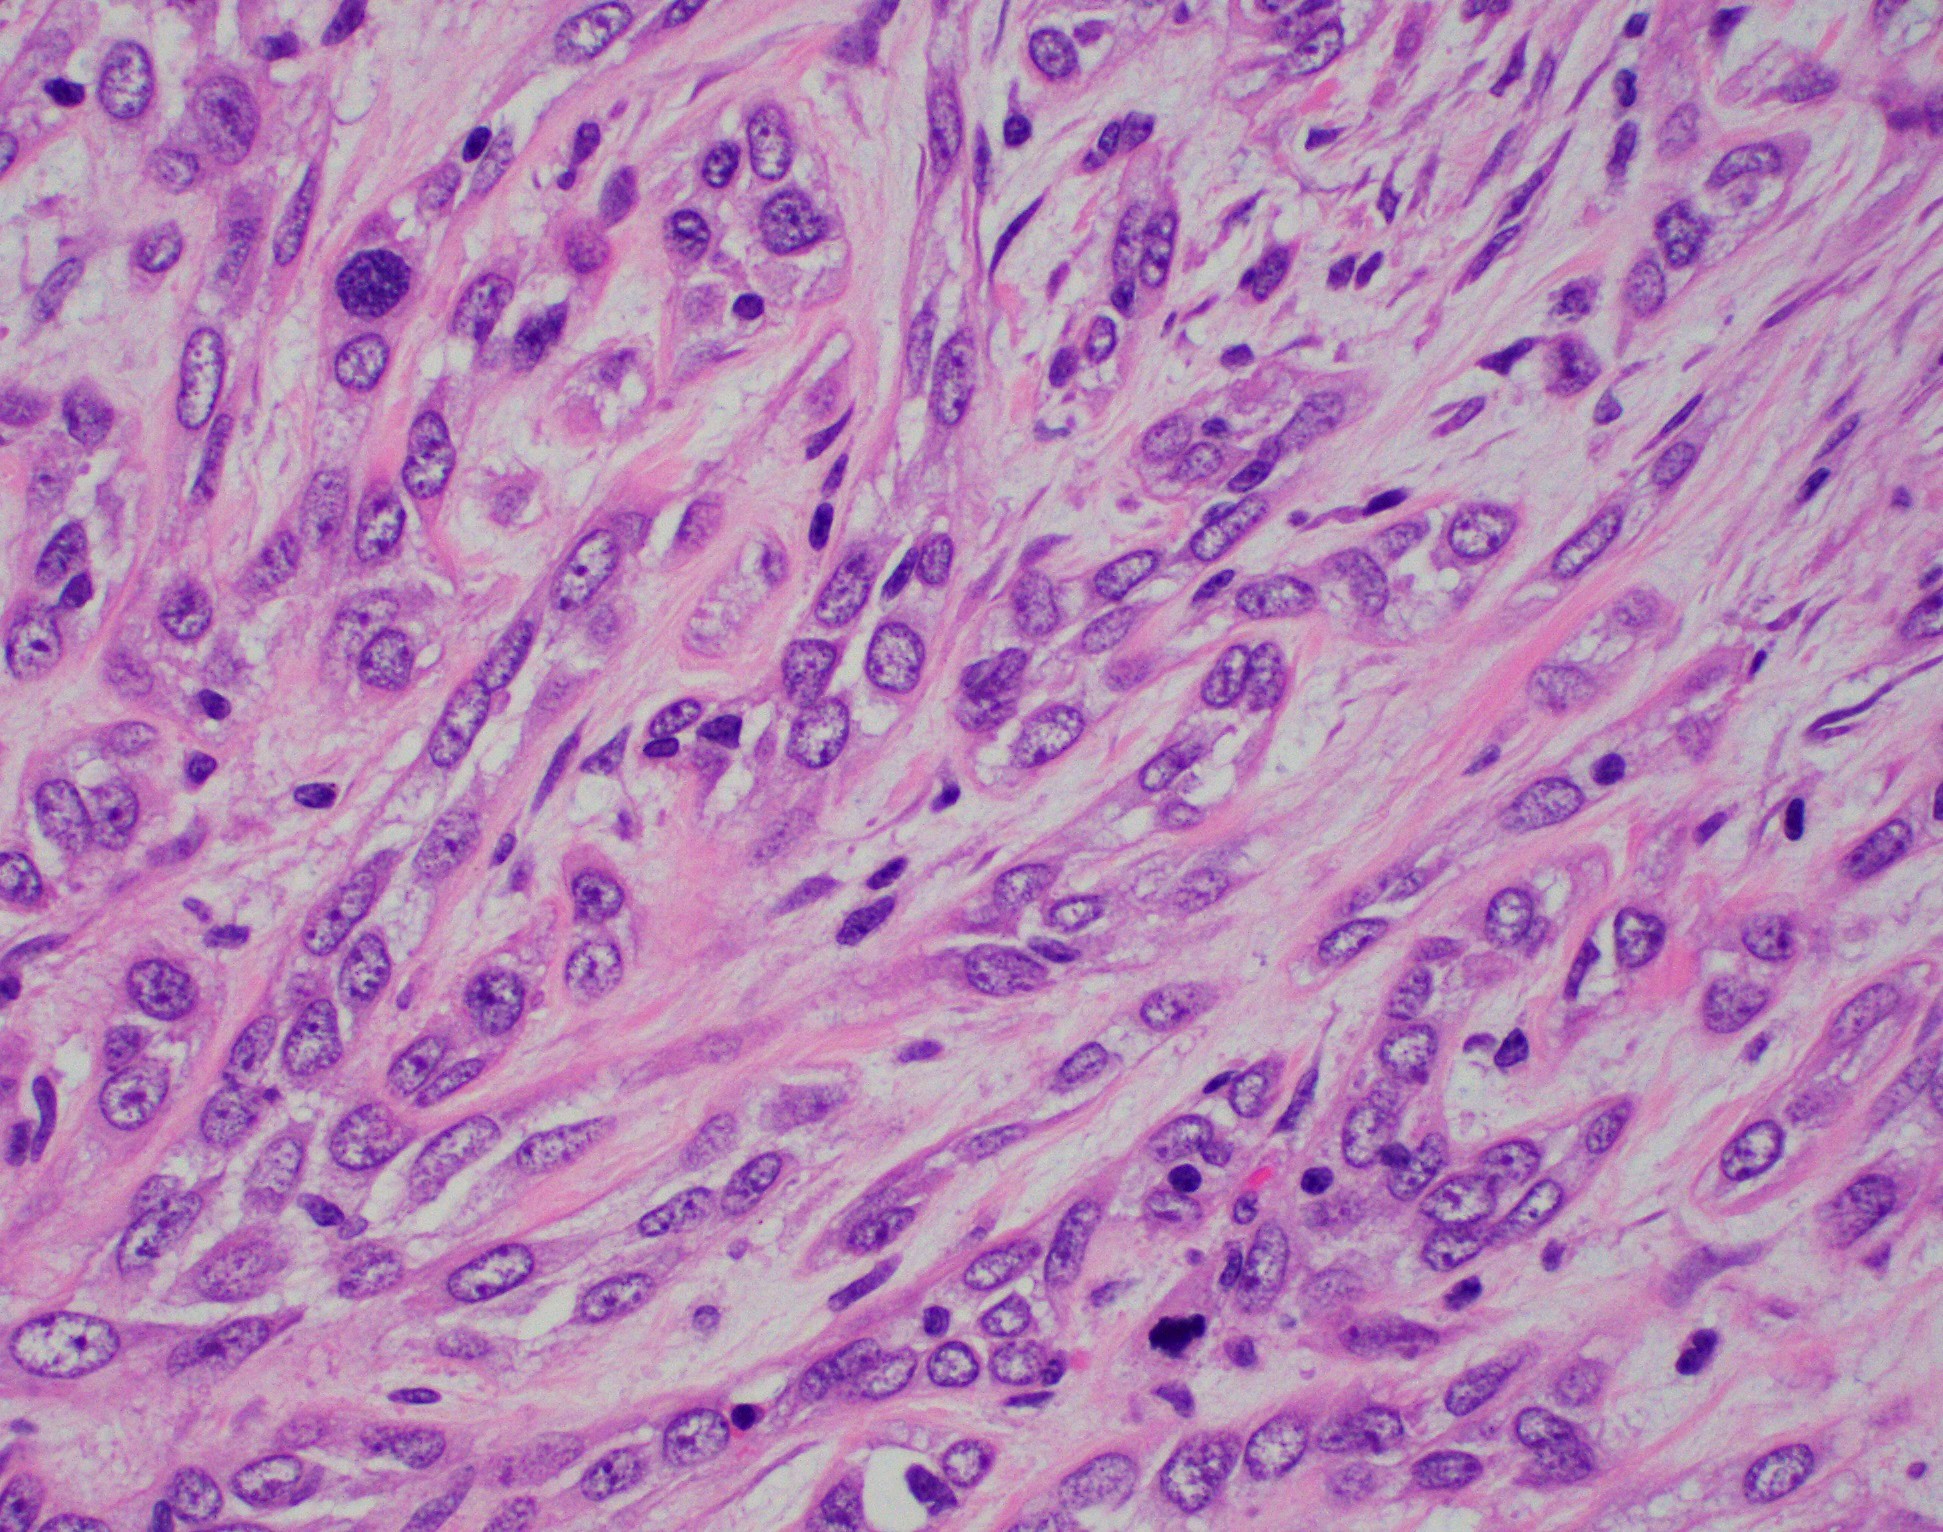 Myoepithelial carcinoma